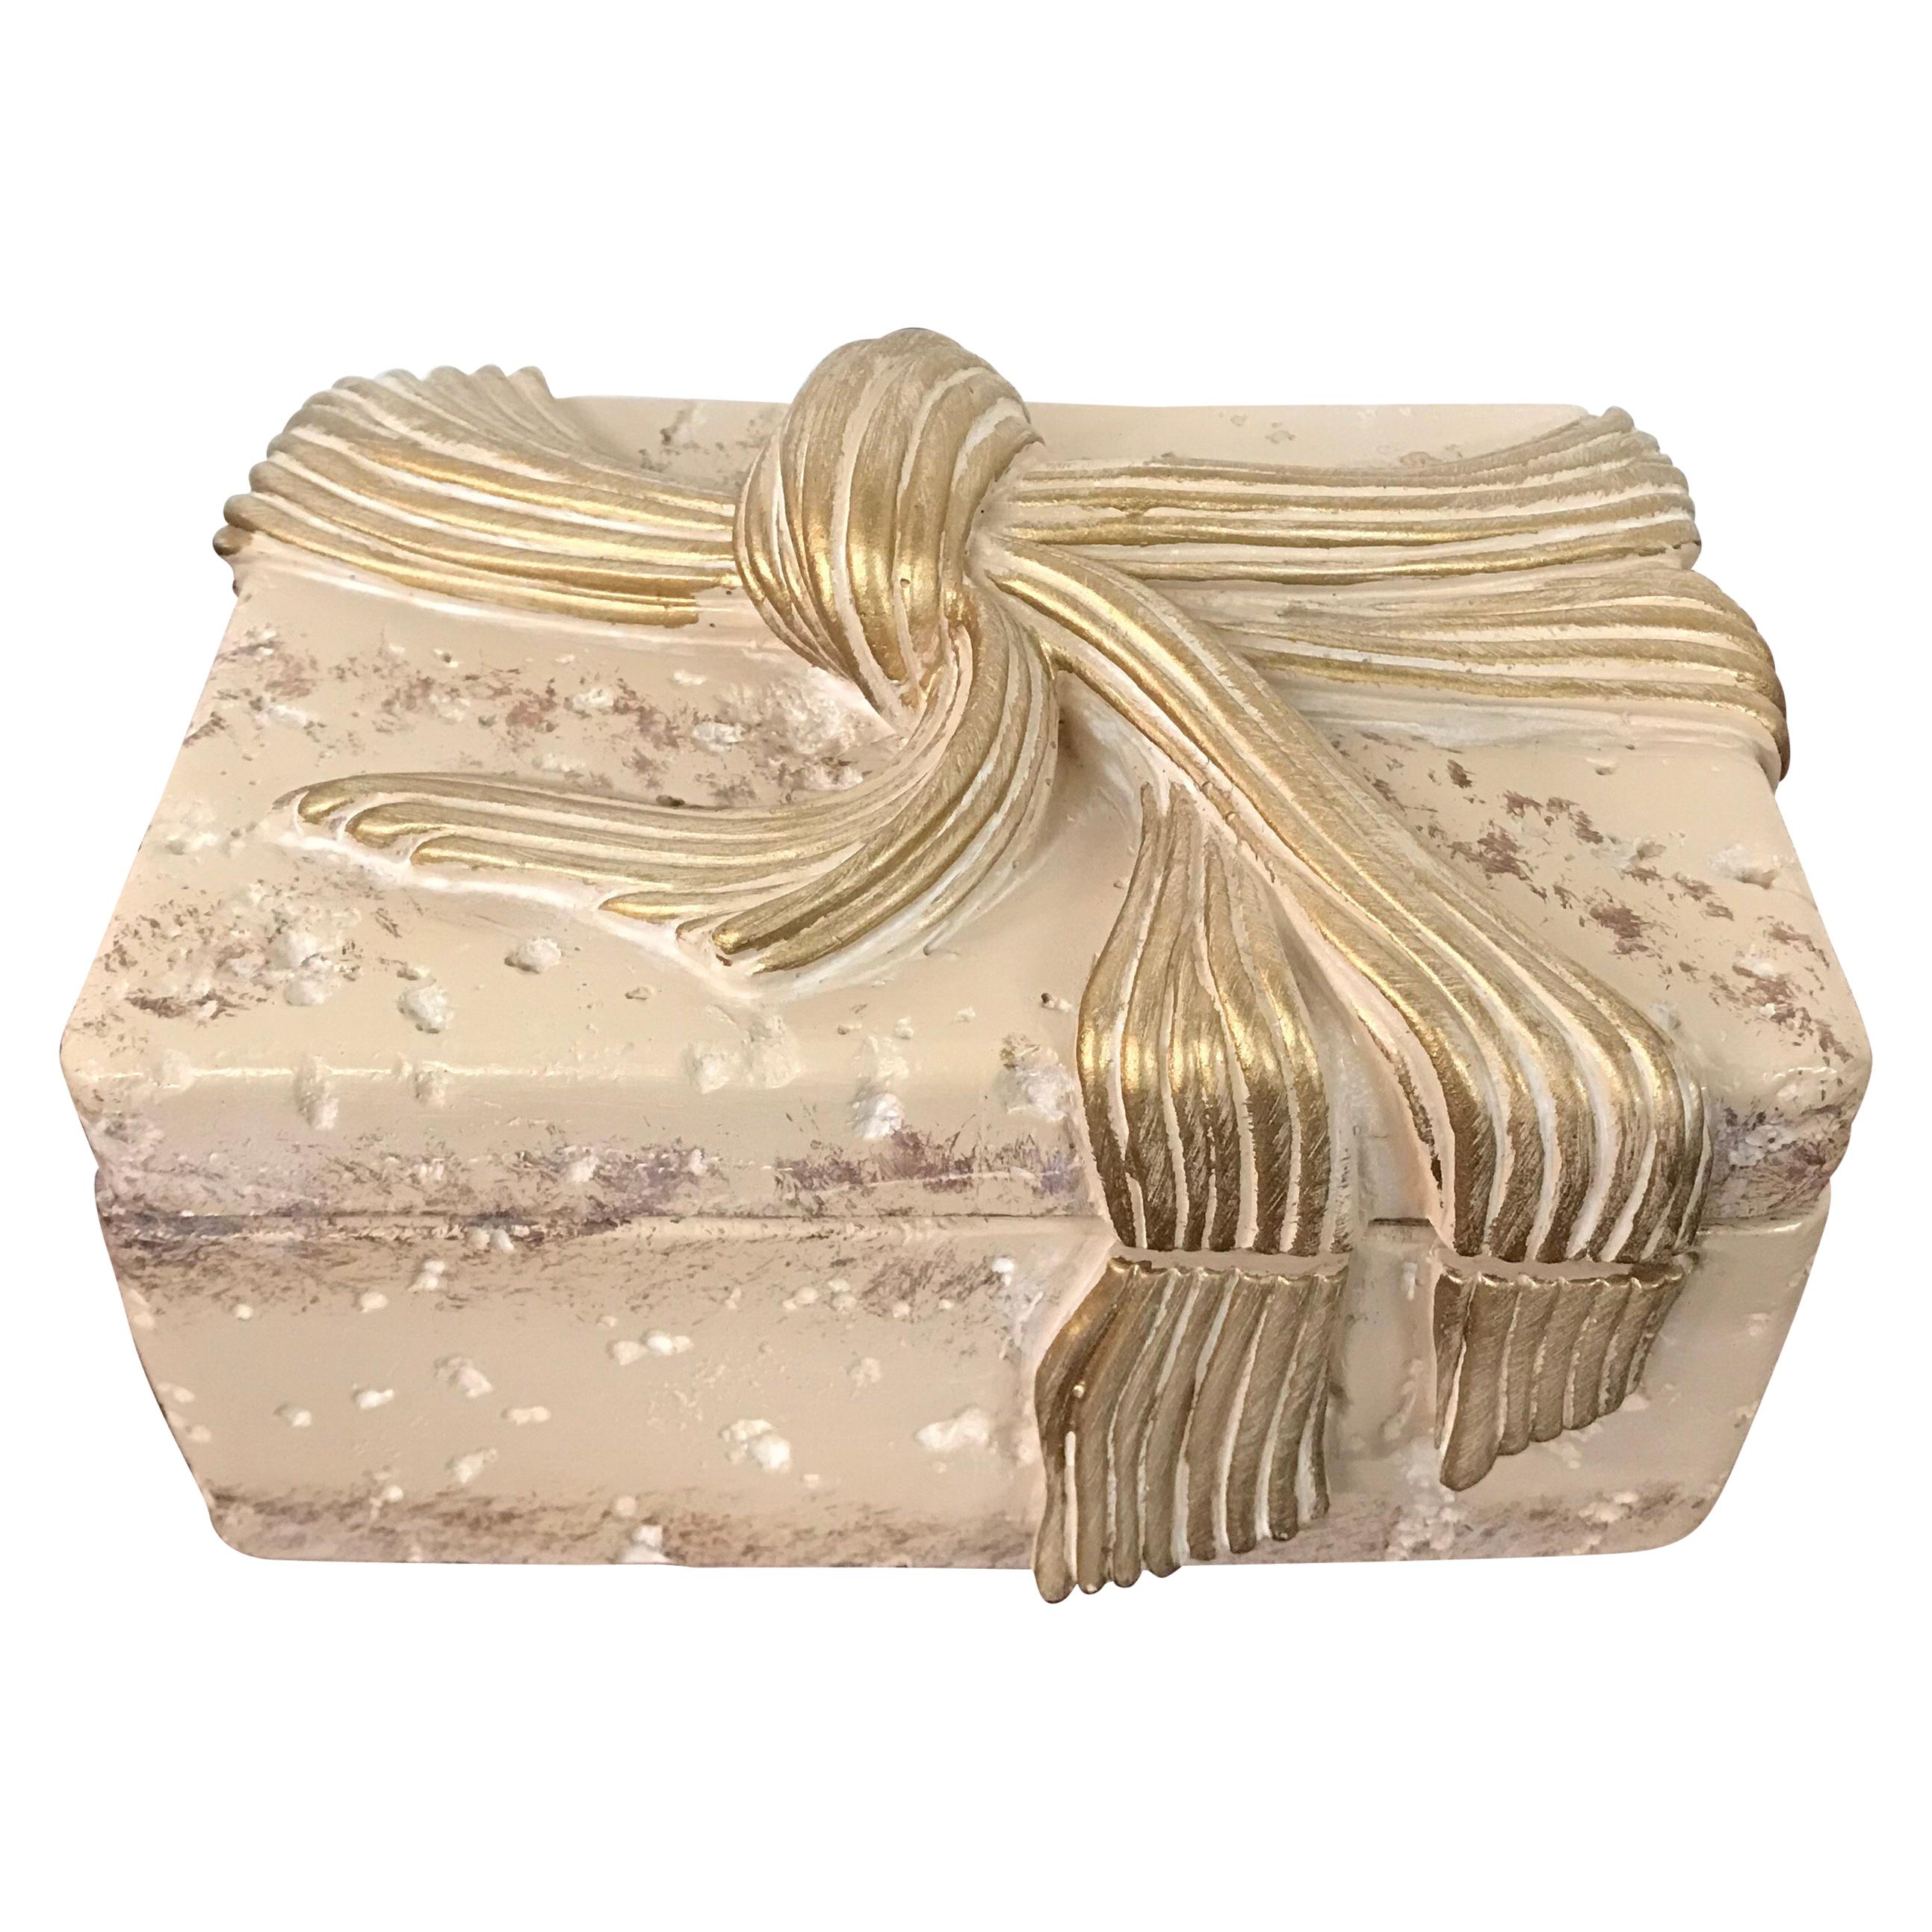 Jaru Cast Stone Ceramic Box with Bow Motif